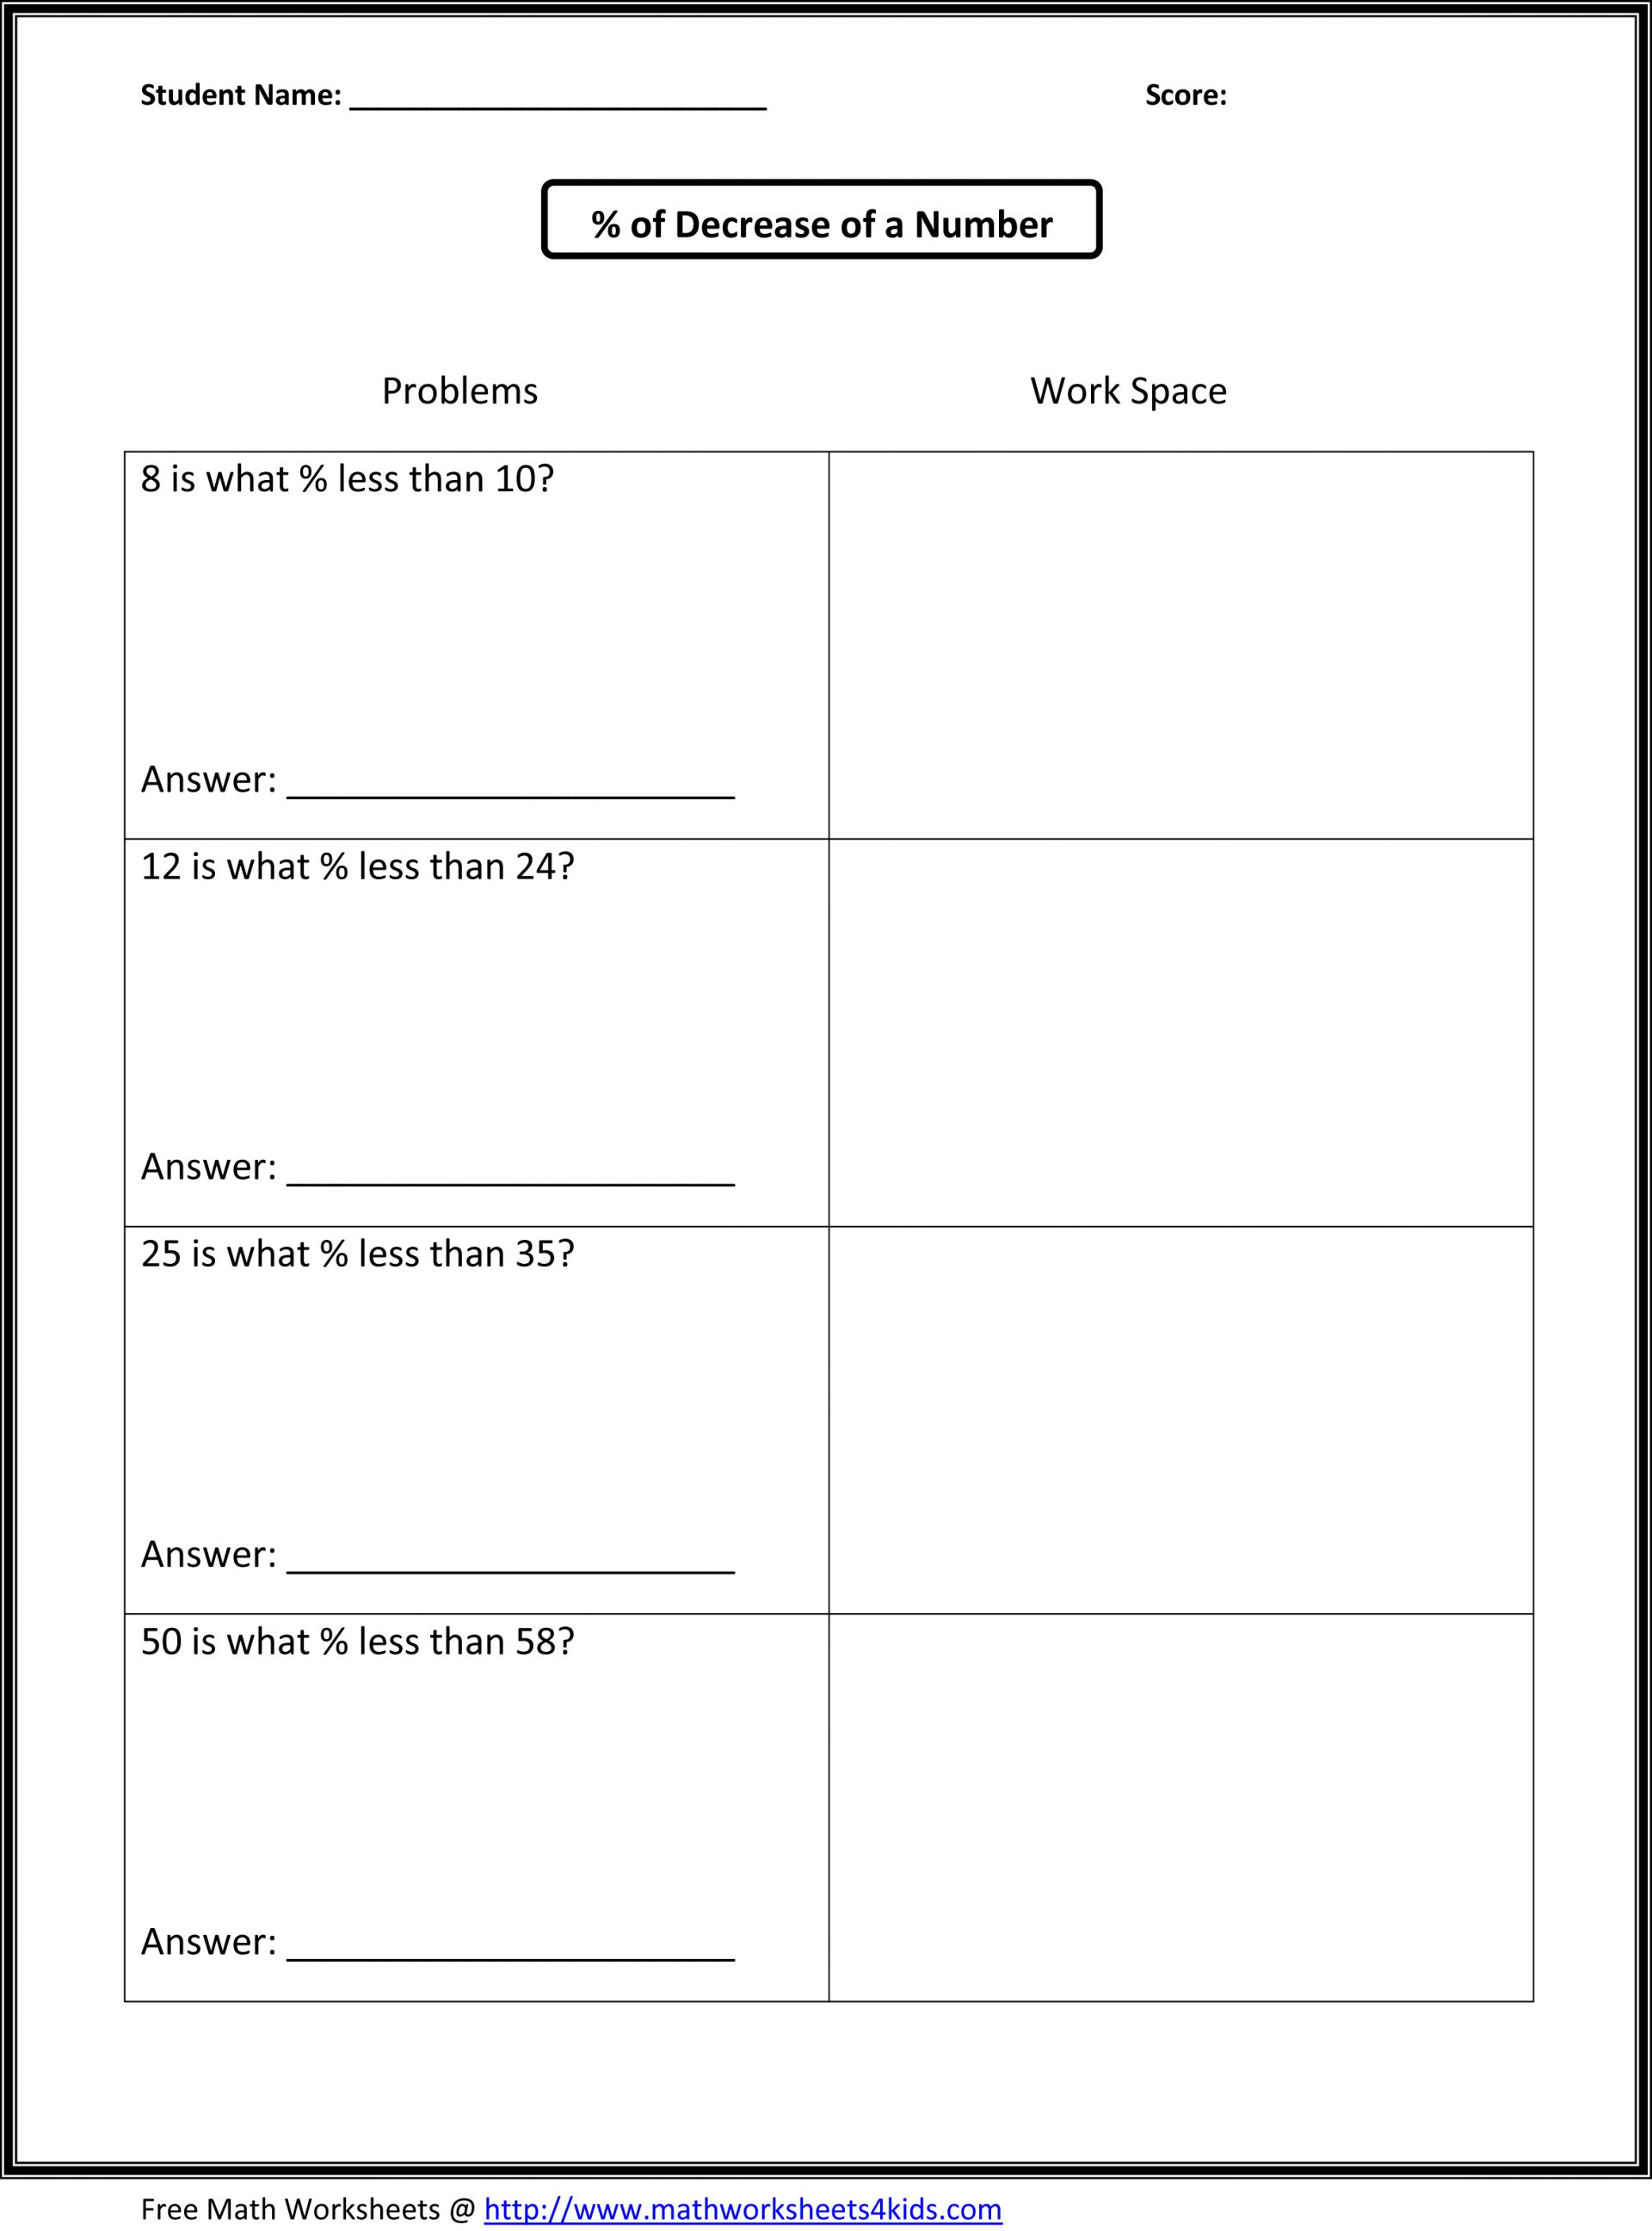 Free Printable Ged Science Worksheets Printable Worksheets